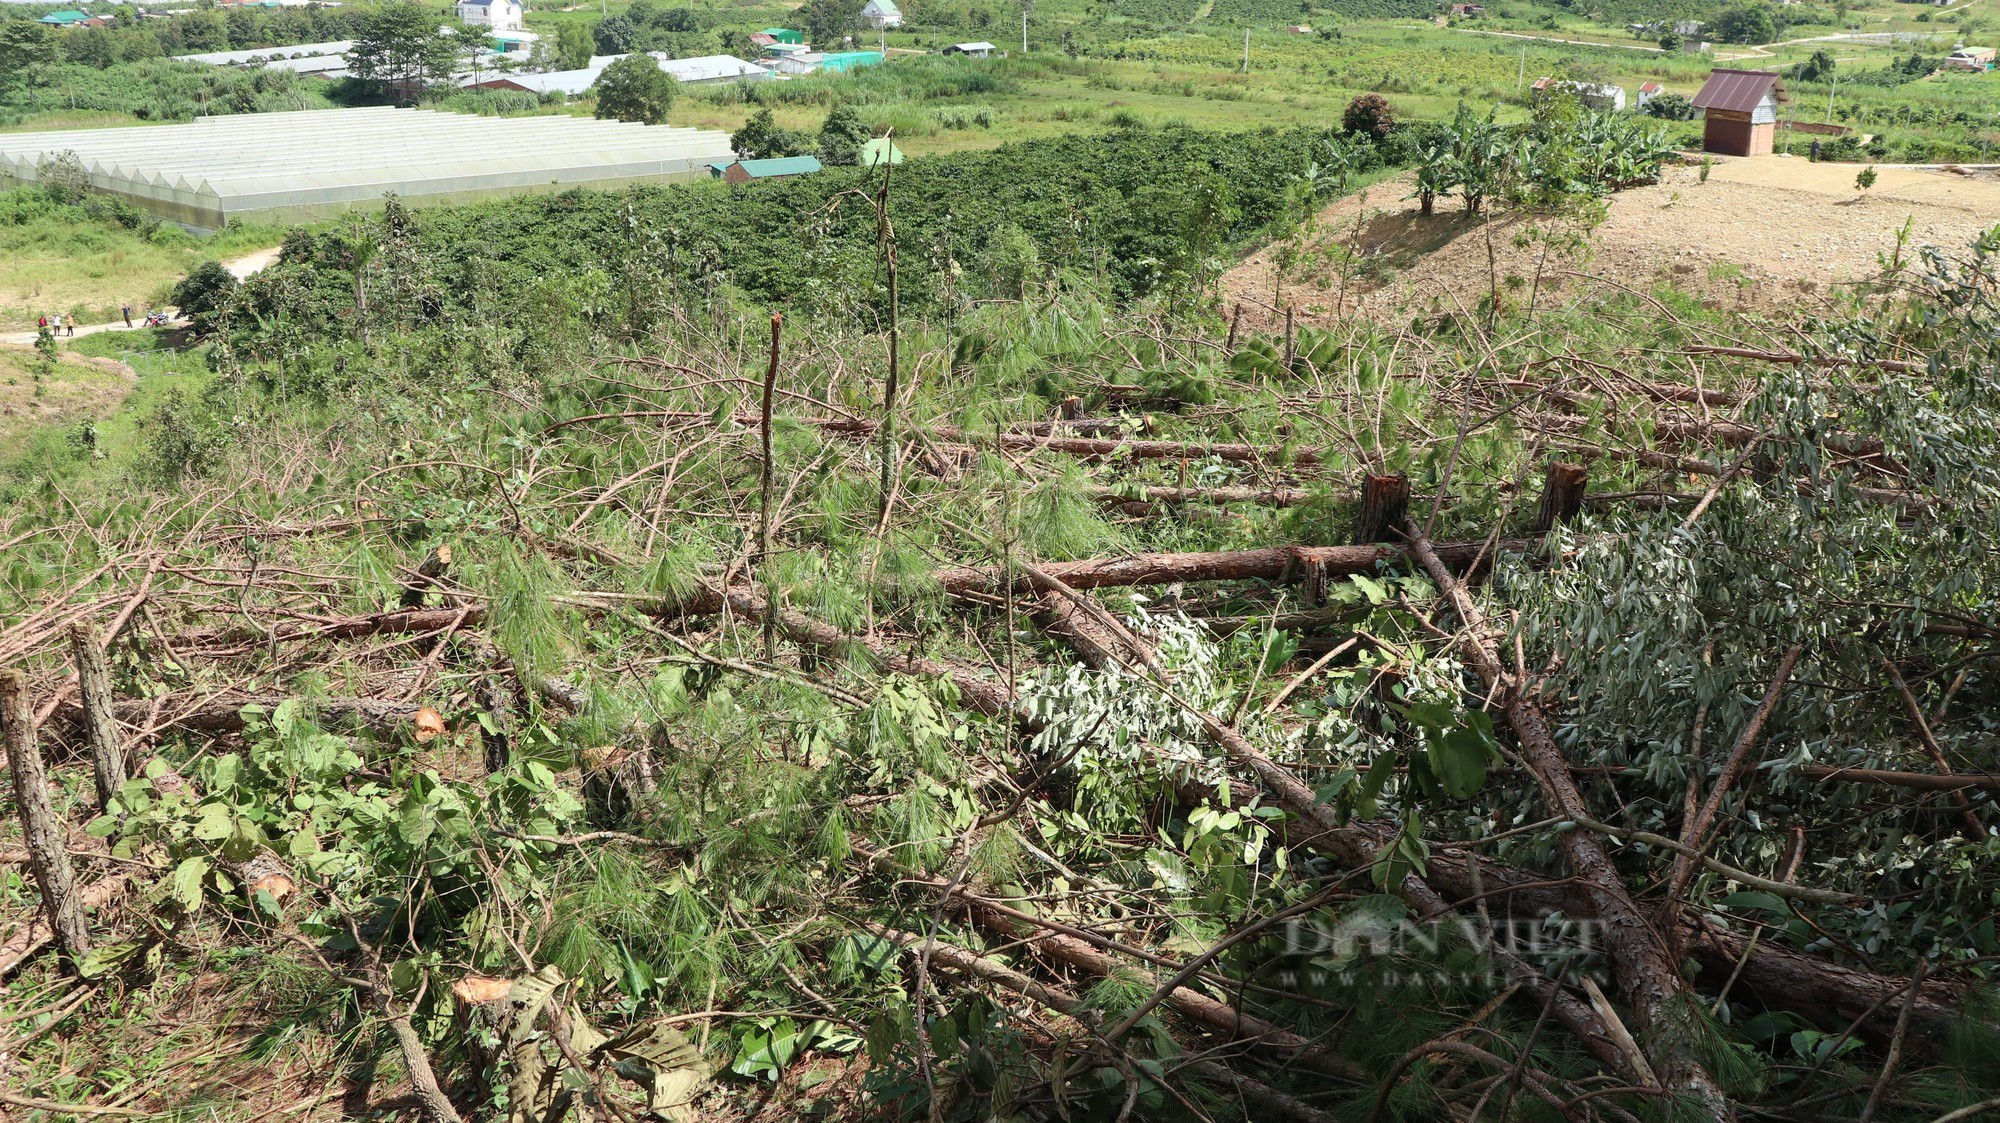 Phá rừng thông ở Lâm Đồng: Hàng trăm cây thông 3 lá nằm la liệt, huyện hỏa tốc chỉ đạo xử lý - Ảnh 2.